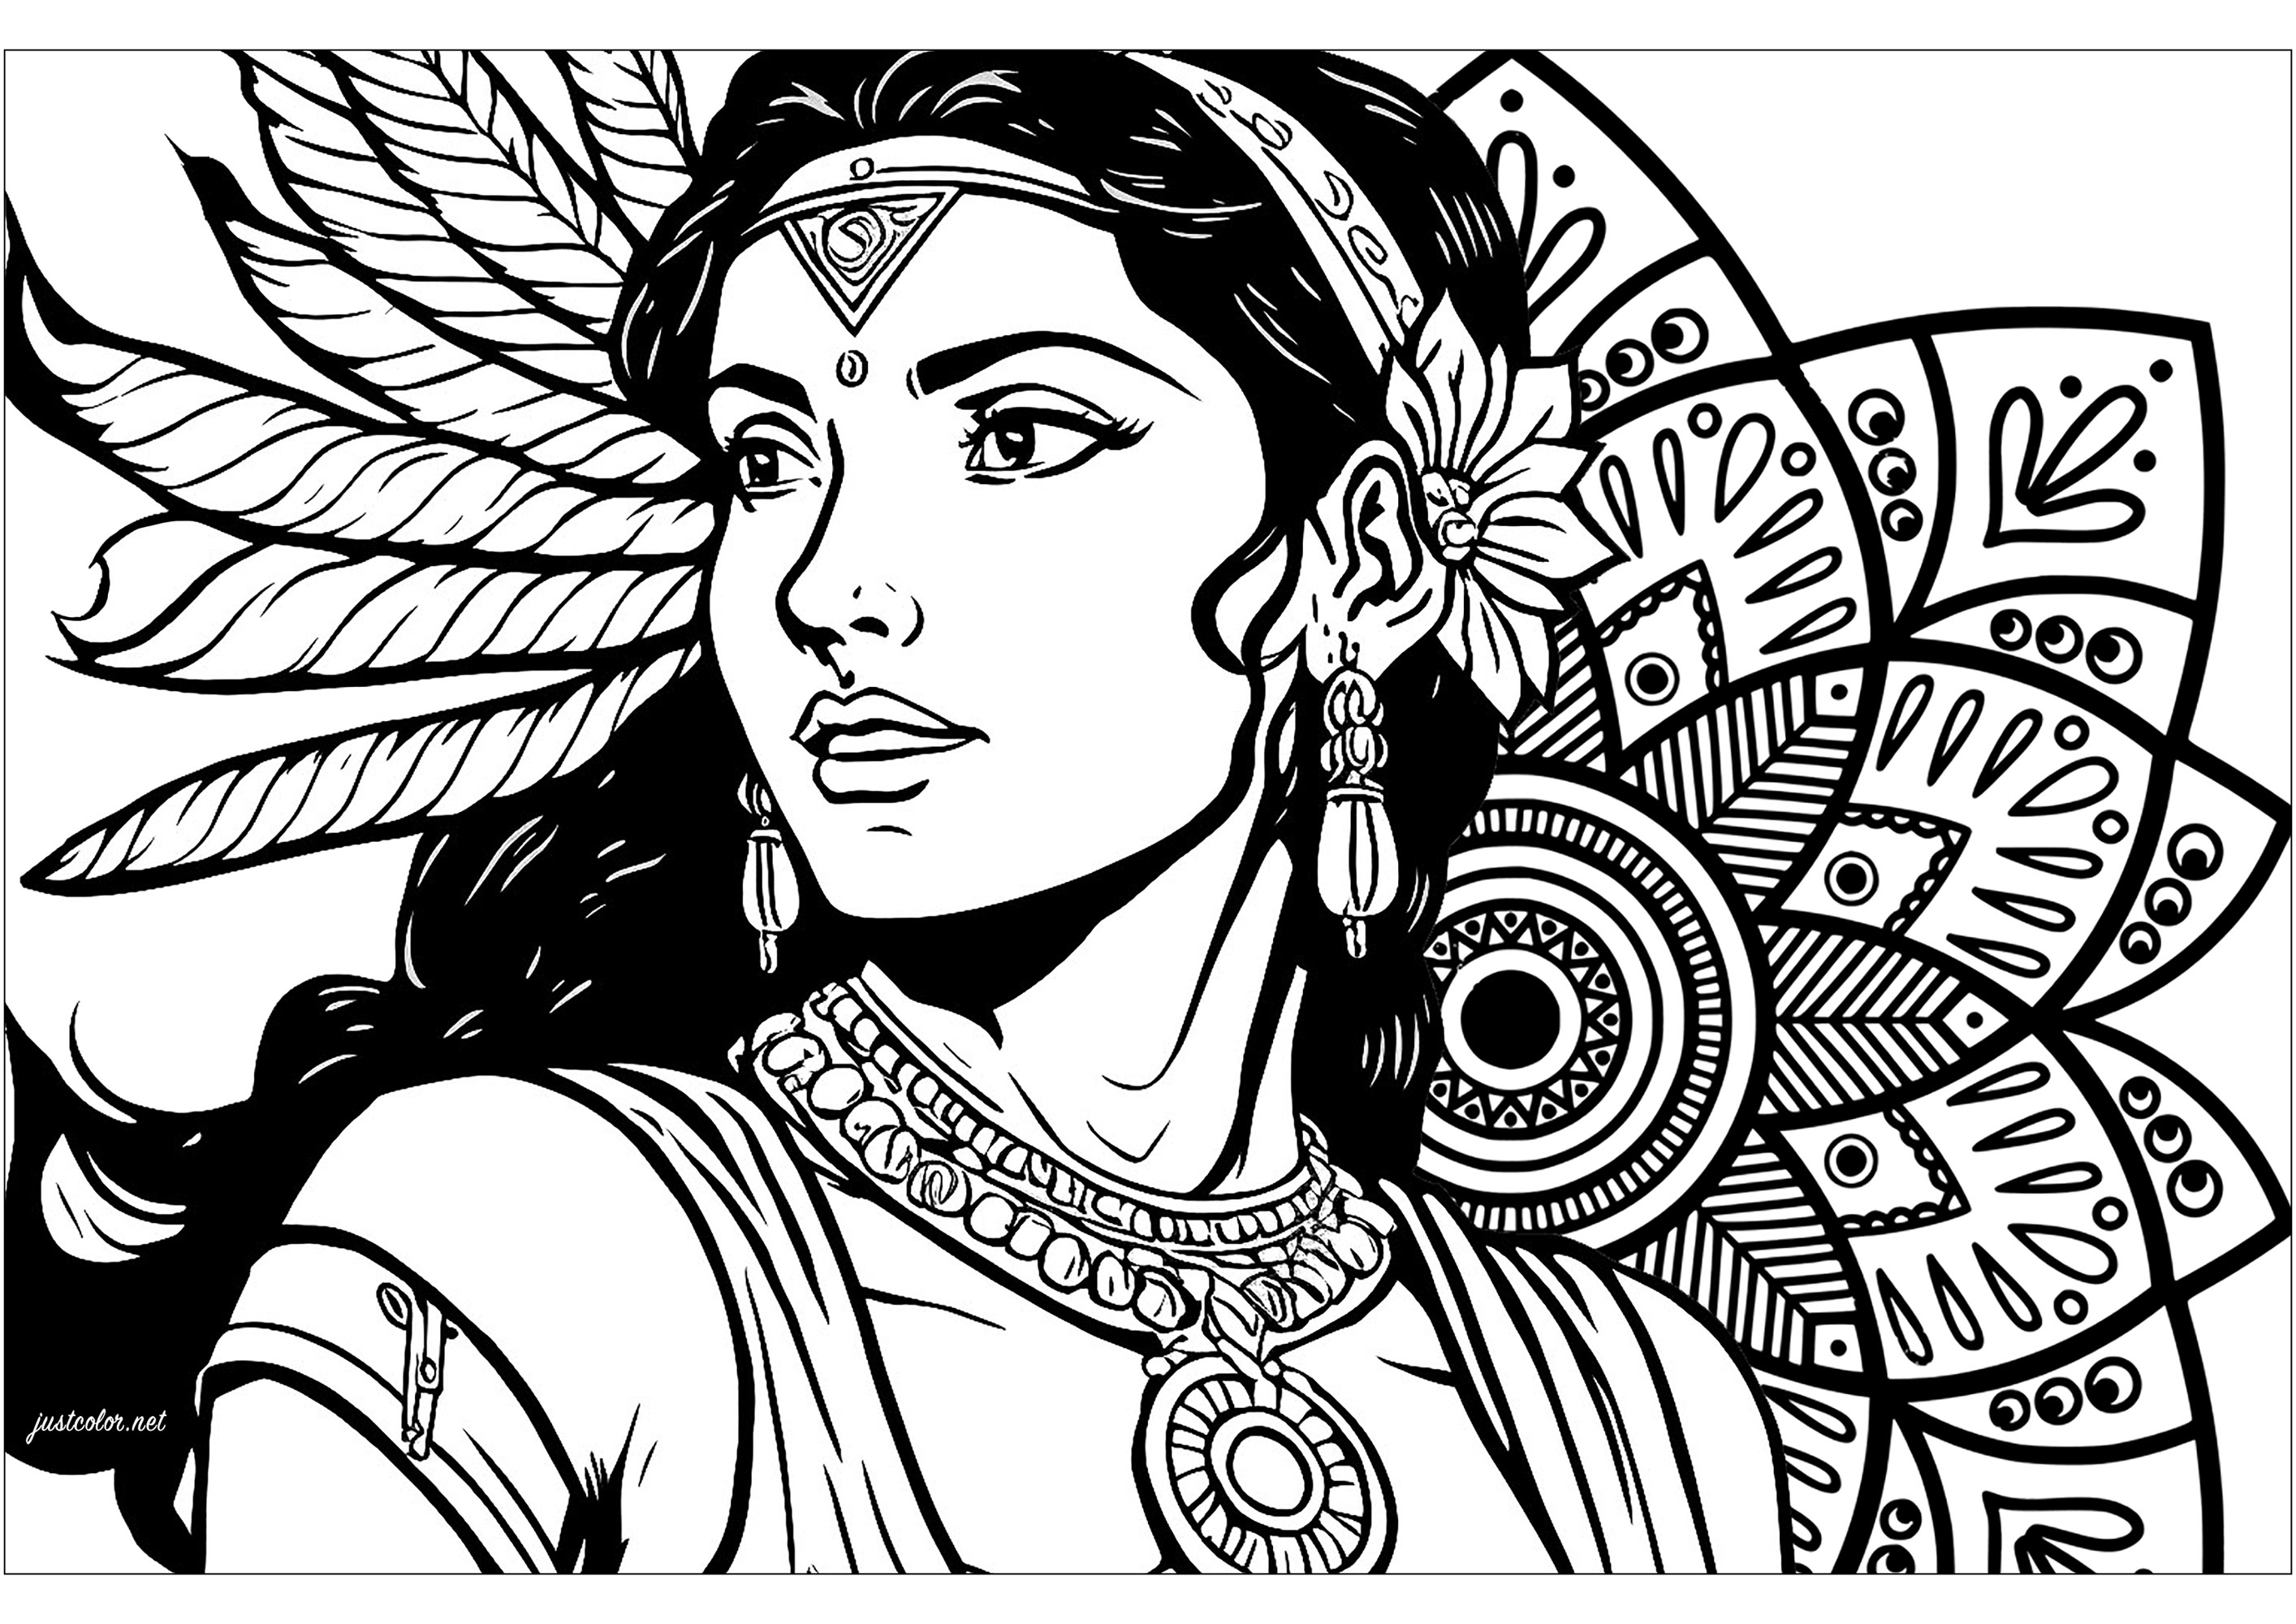 Magnífica coloração de uma mulher indiana e uma Mandala inspirada nos padrões indianos. O desenho desta mulher indiana com o seu olhar penetrante recorda-nos a força interior que está adormecida em nós, enquanto a mandala inspirada nos padrões indianos simboliza a harmonia universal, convidando à paz interior.